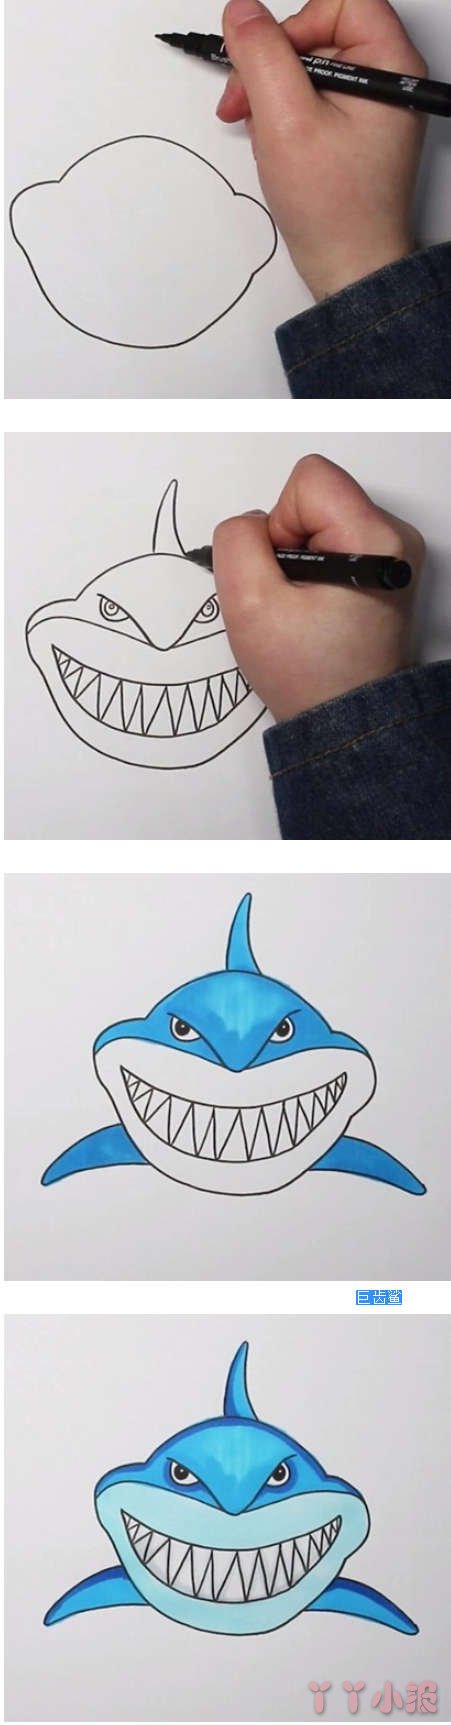 怎么画巨齿鲨鱼简笔画步骤教程涂色简单